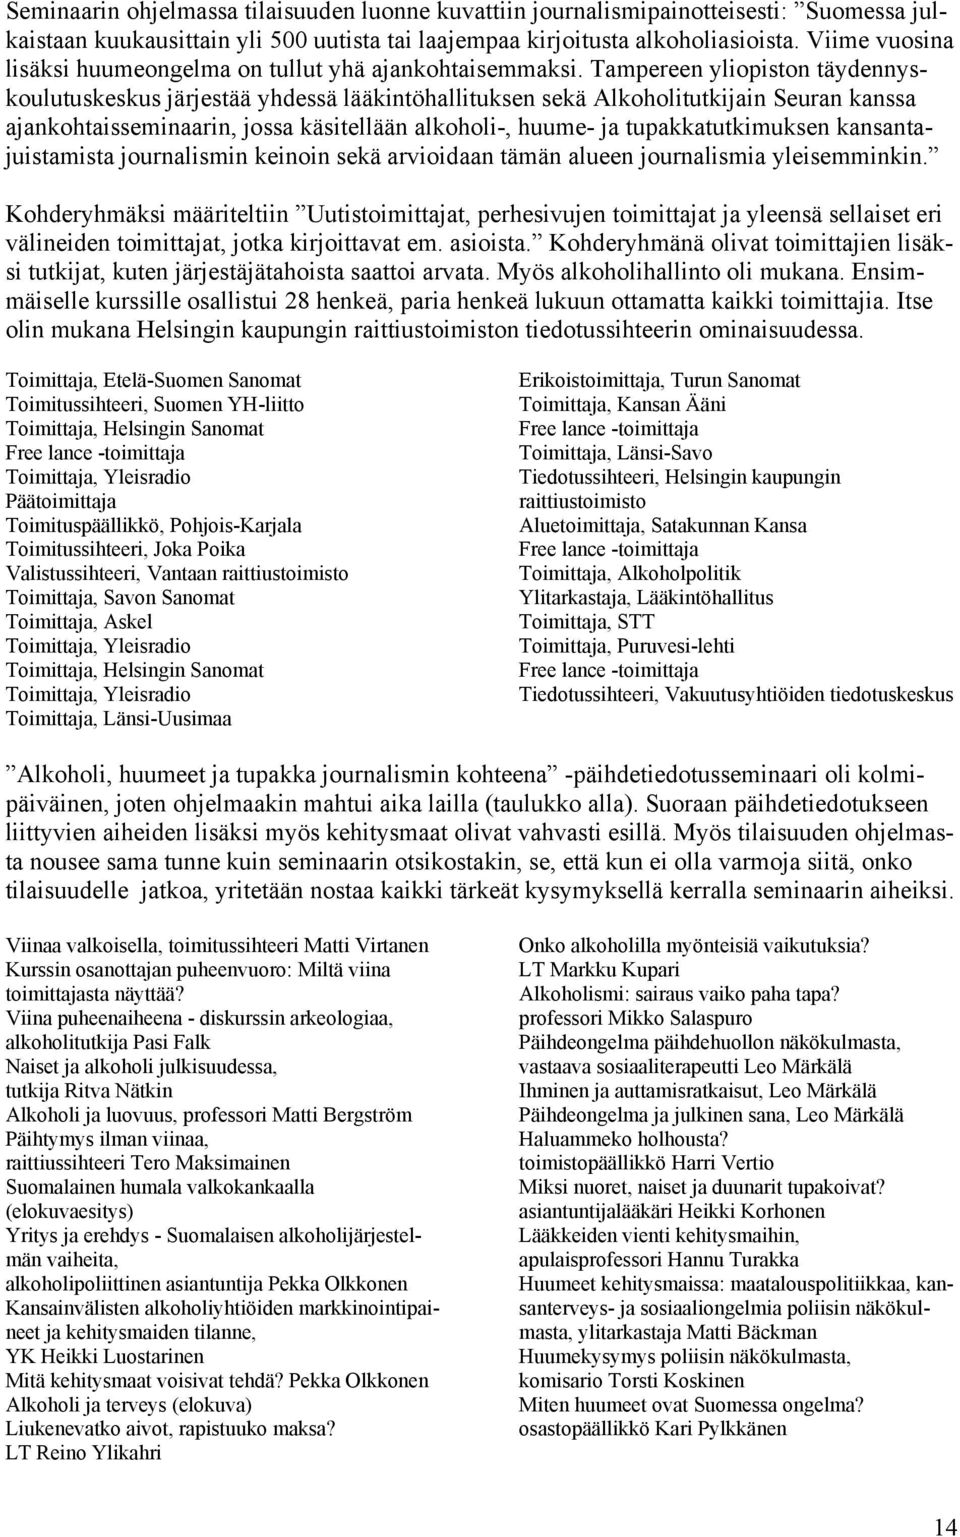 Tampereen yliopiston täydennyskoulutuskeskus järjestää yhdessä lääkintöhallituksen sekä Alkoholitutkijain Seuran kanssa ajankohtaisseminaarin, jossa käsitellään alkoholi-, huume- ja